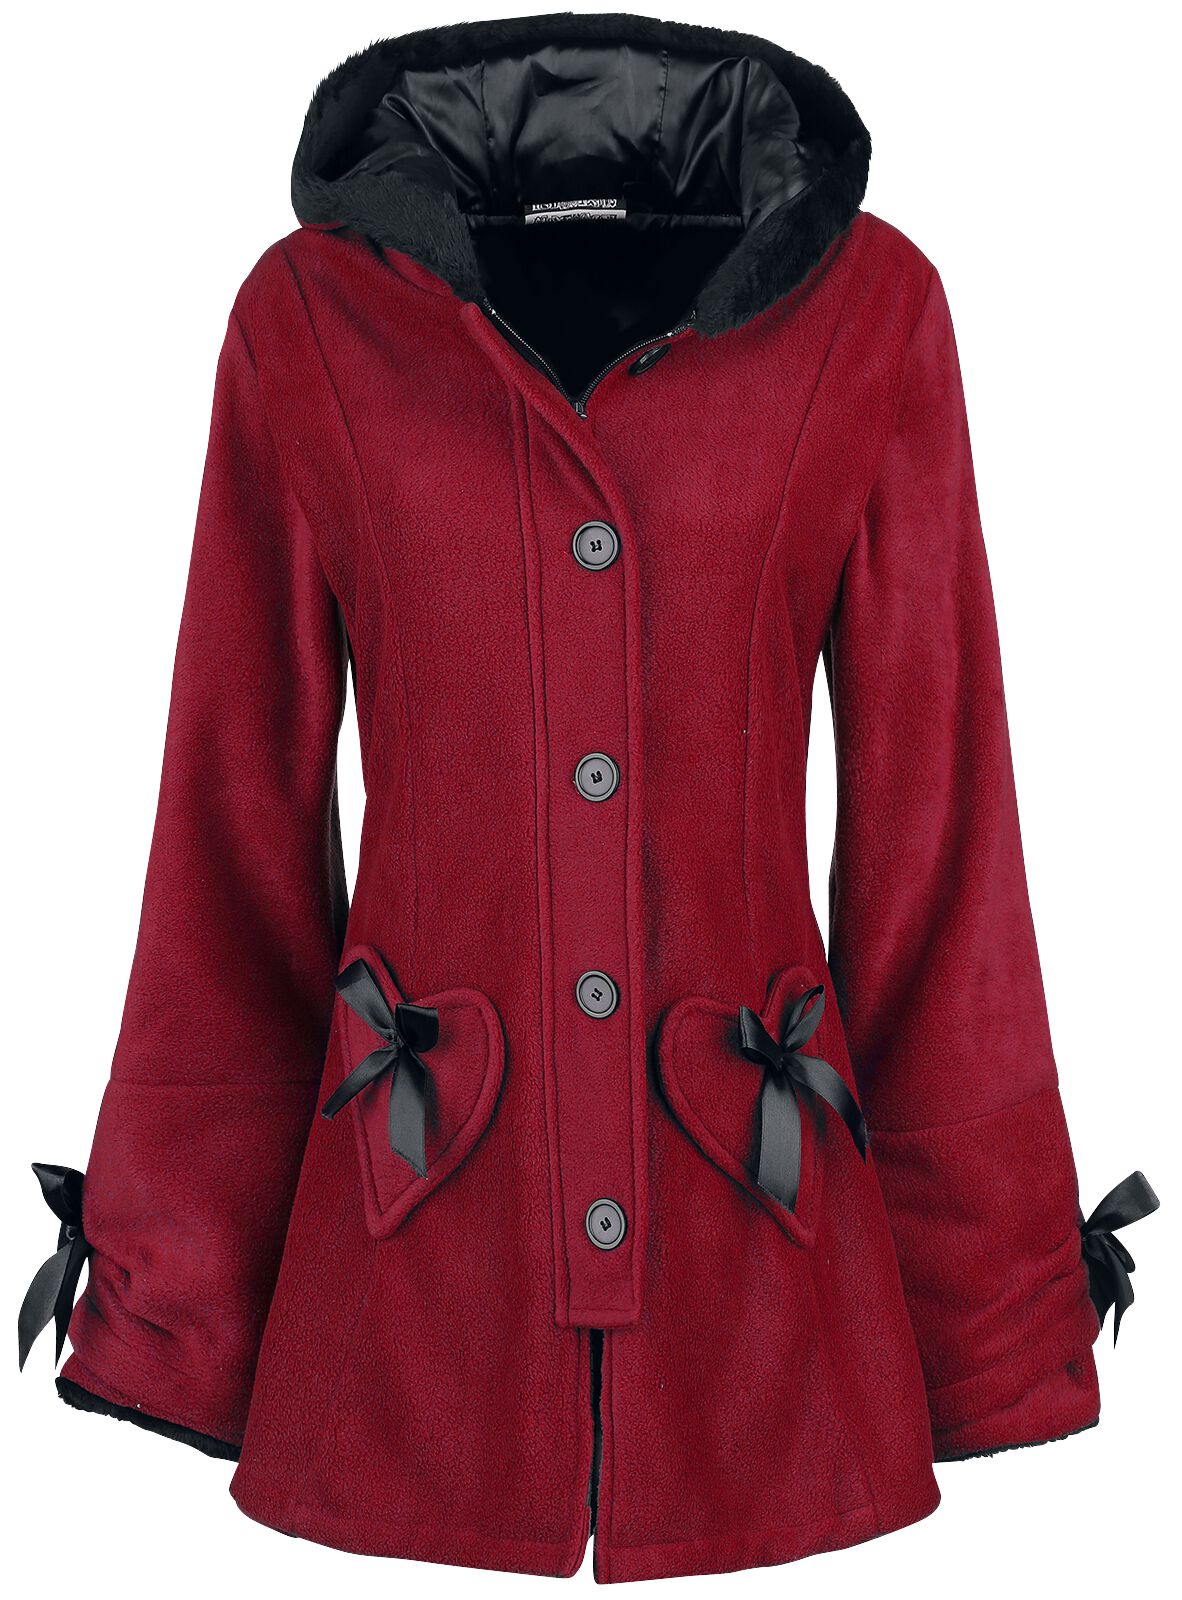 Manteau court de Poizen Industries - Manteau Alison - XS à 5XL - pour Femme - rouge